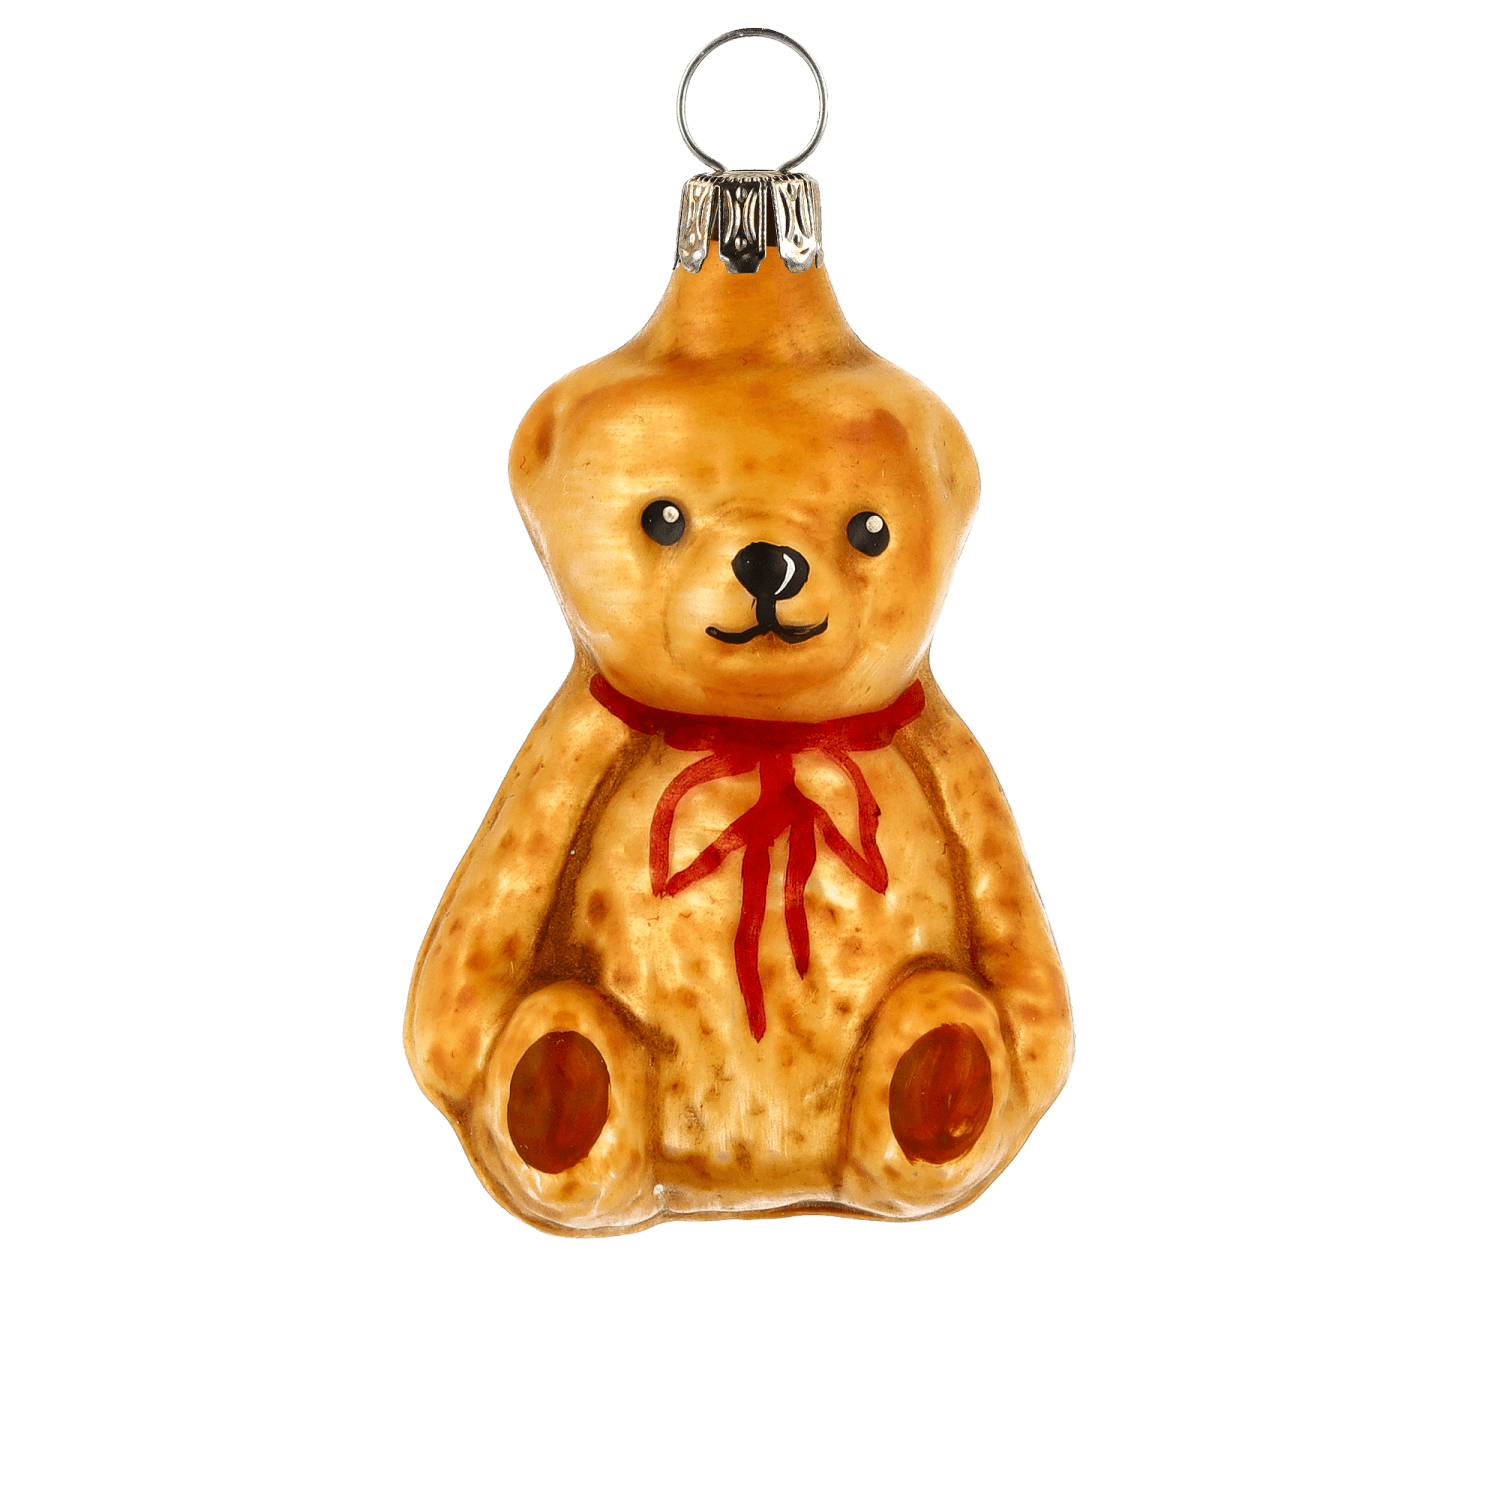 MAROLIN® - Glass ornament "Little Teddy bear sitting"